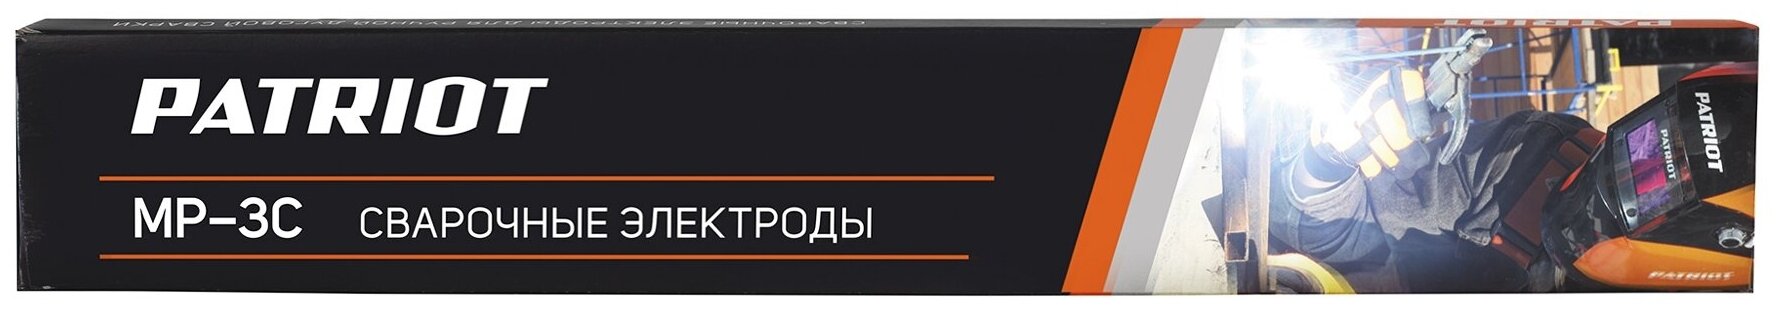 Электроды Patriot МР-3С 25mm 1kg 605012000